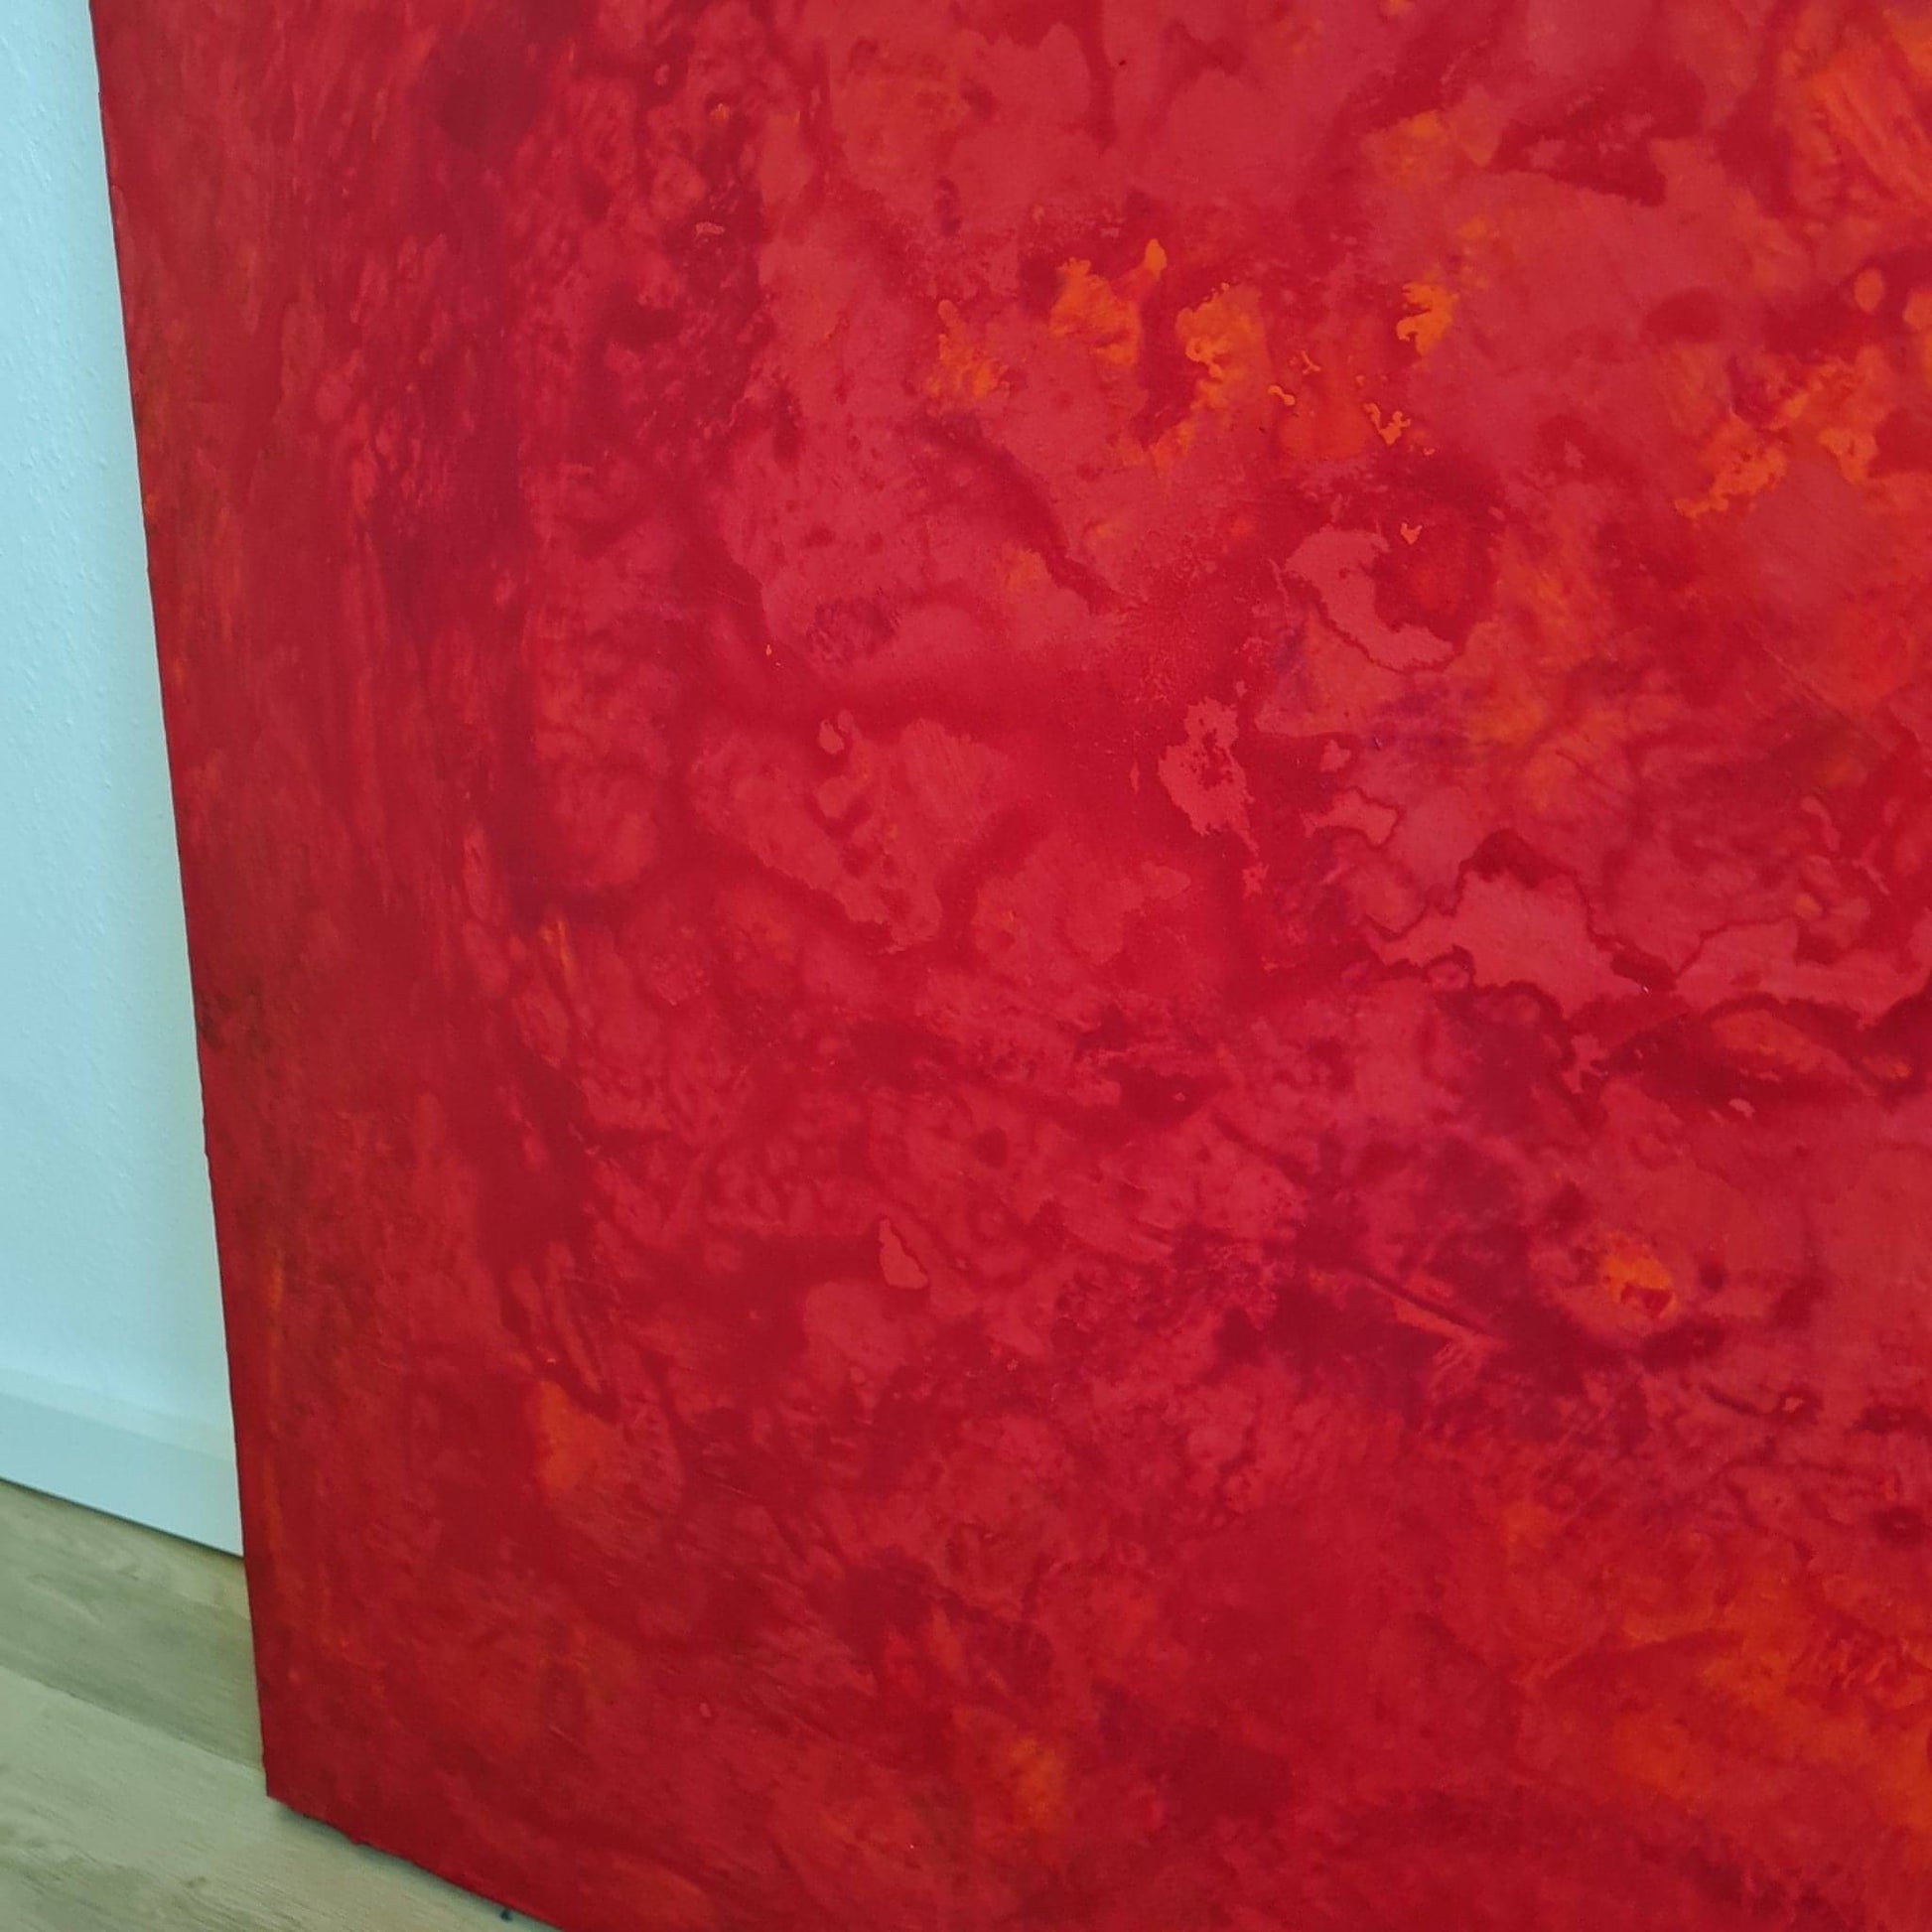 Ein abstraktes Gemälde in intensivem Rot als Ausdruck von Leidenschaft und Gefühl Abstrakte Bilder & moderne Auftragsmalerei, abstrakte große bilder online kaufen, Auftrags Malere